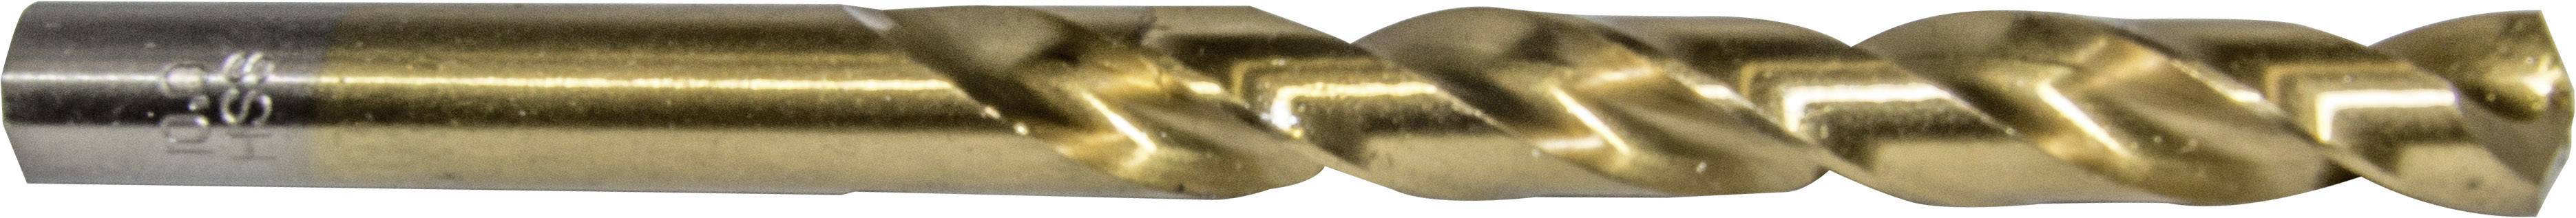 HELLER 29274 0 Metall-Spiralbohrer 1 Stück 10 mm Gesamtlänge 133 mm 1 St.